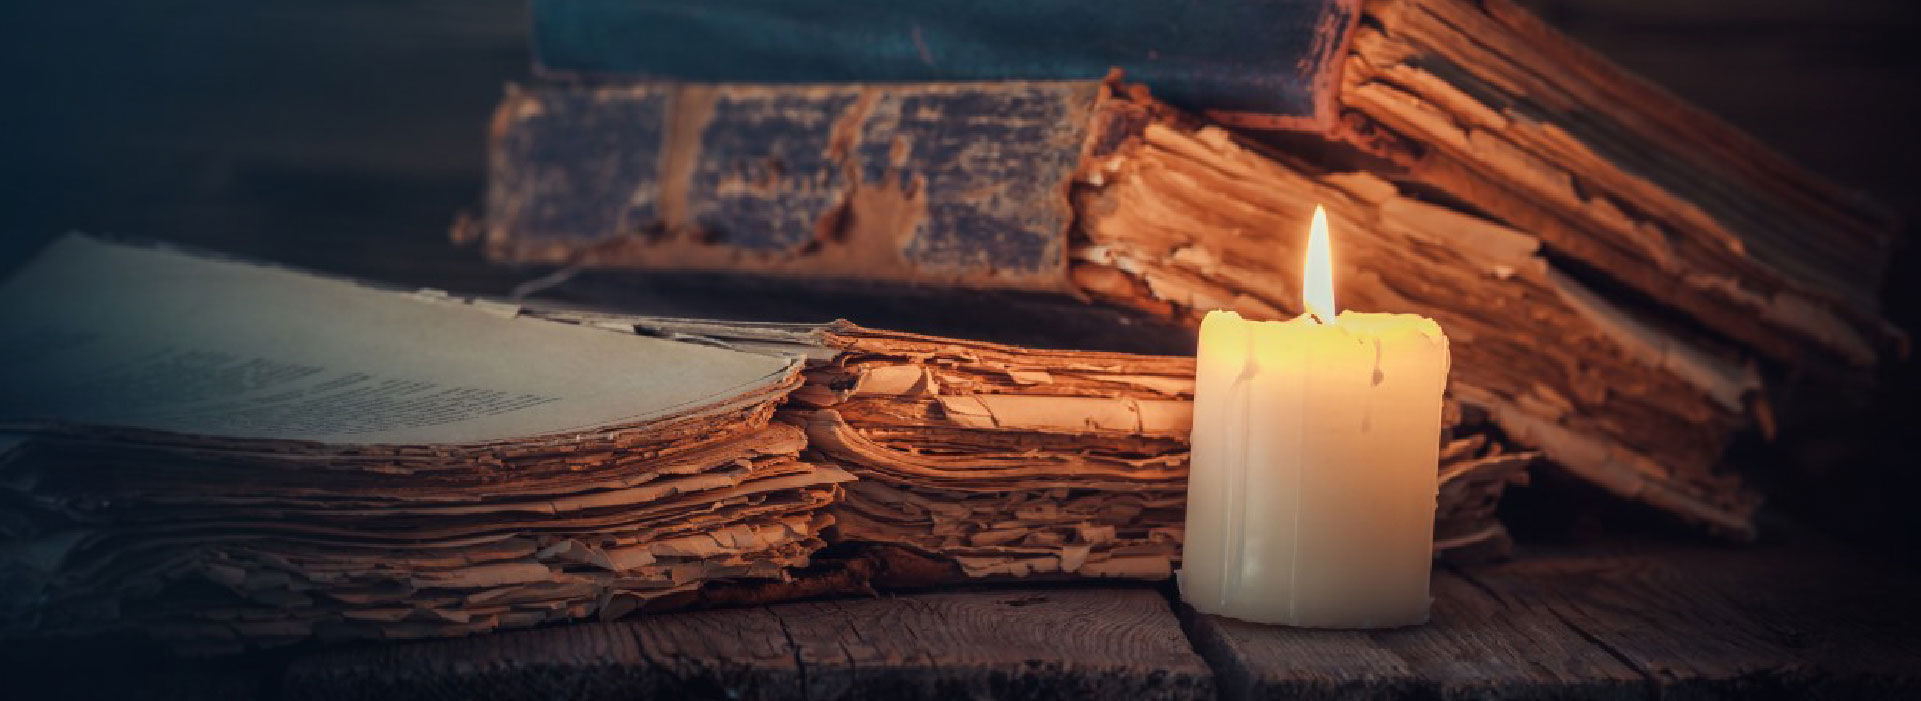 Imagem de uma vela acesa e livros atrás dela